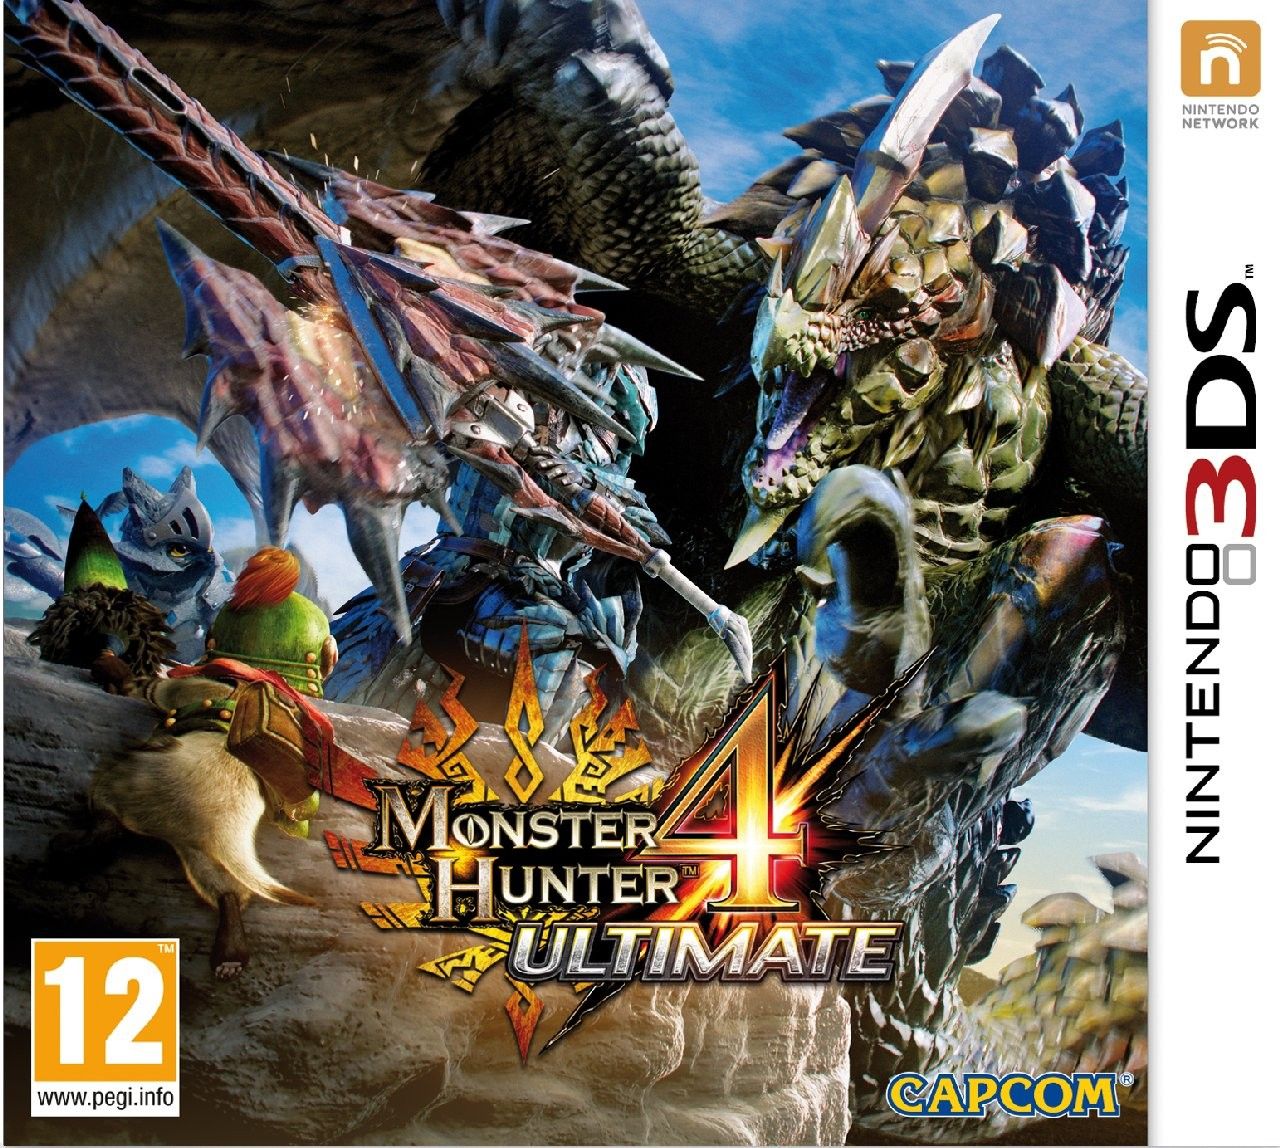 Video Recensione di Monster Hunter 4 Ultimate offerta da EPSON